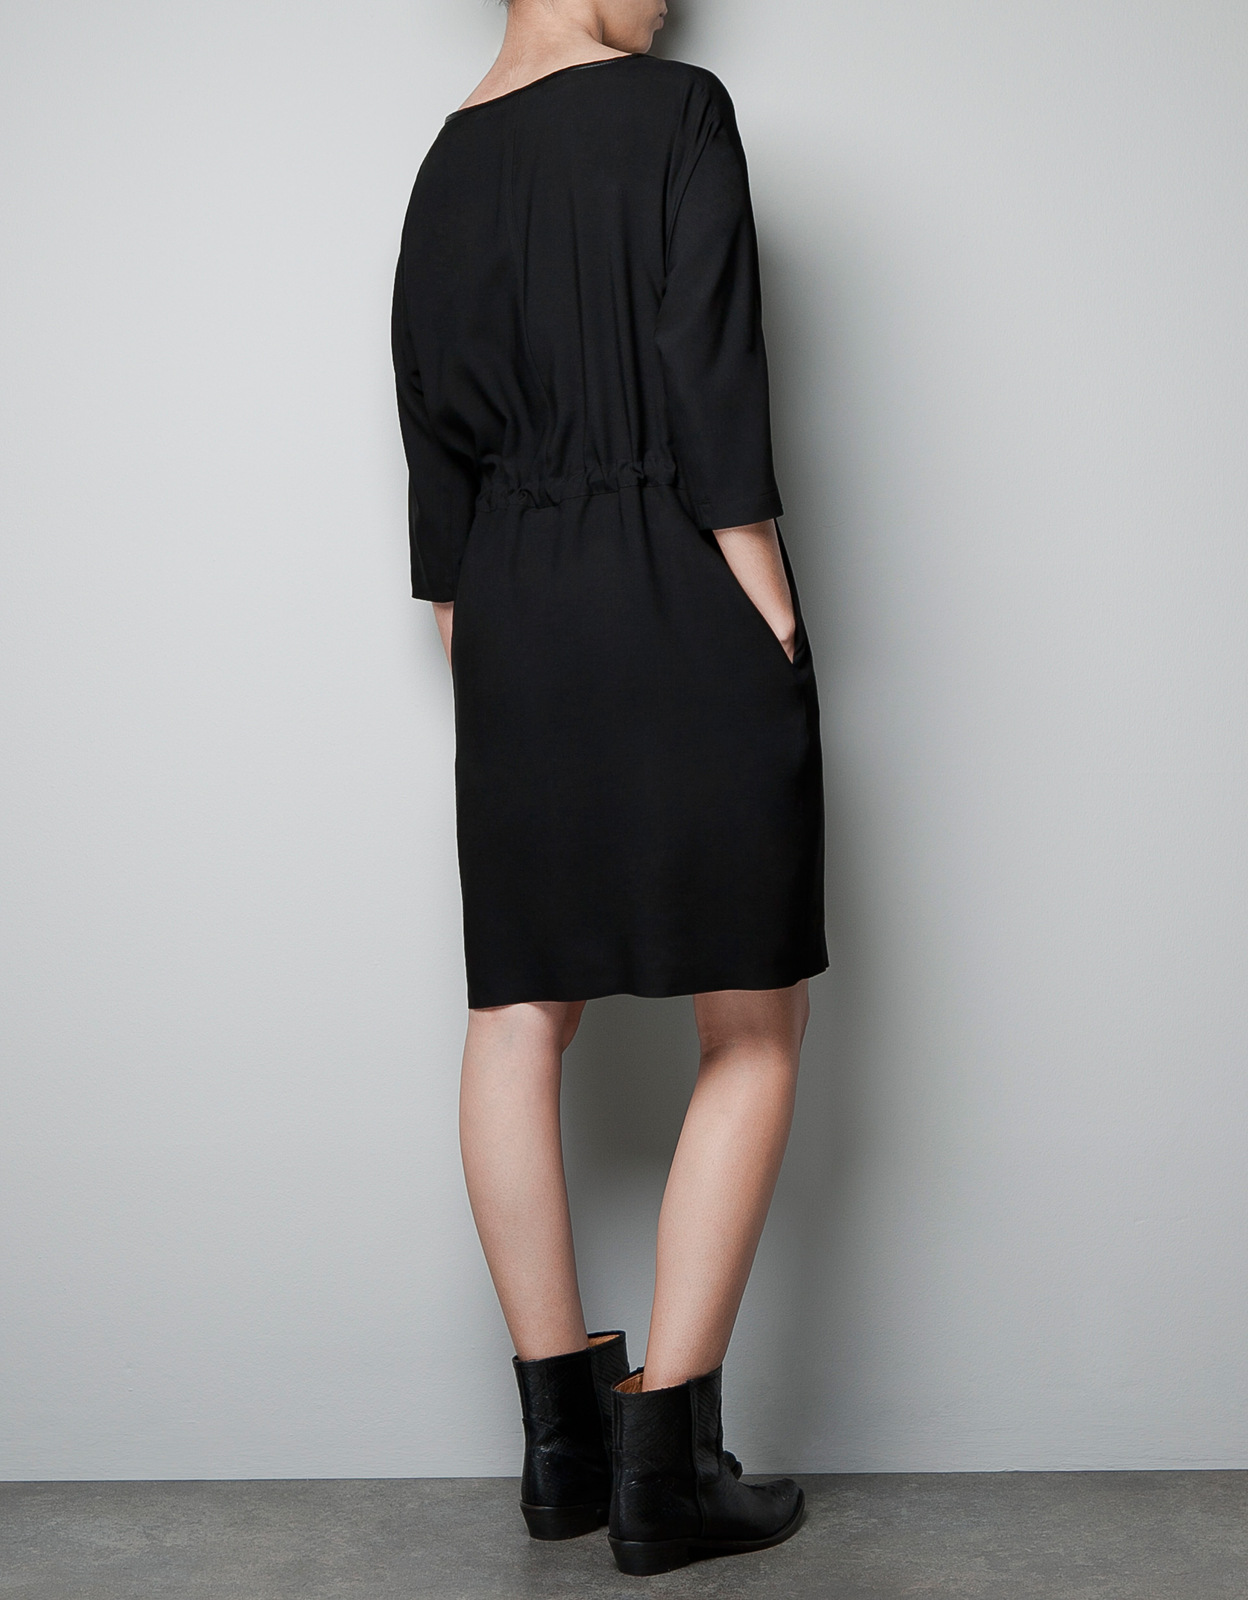 Zara fekete ruha 2012 fotója